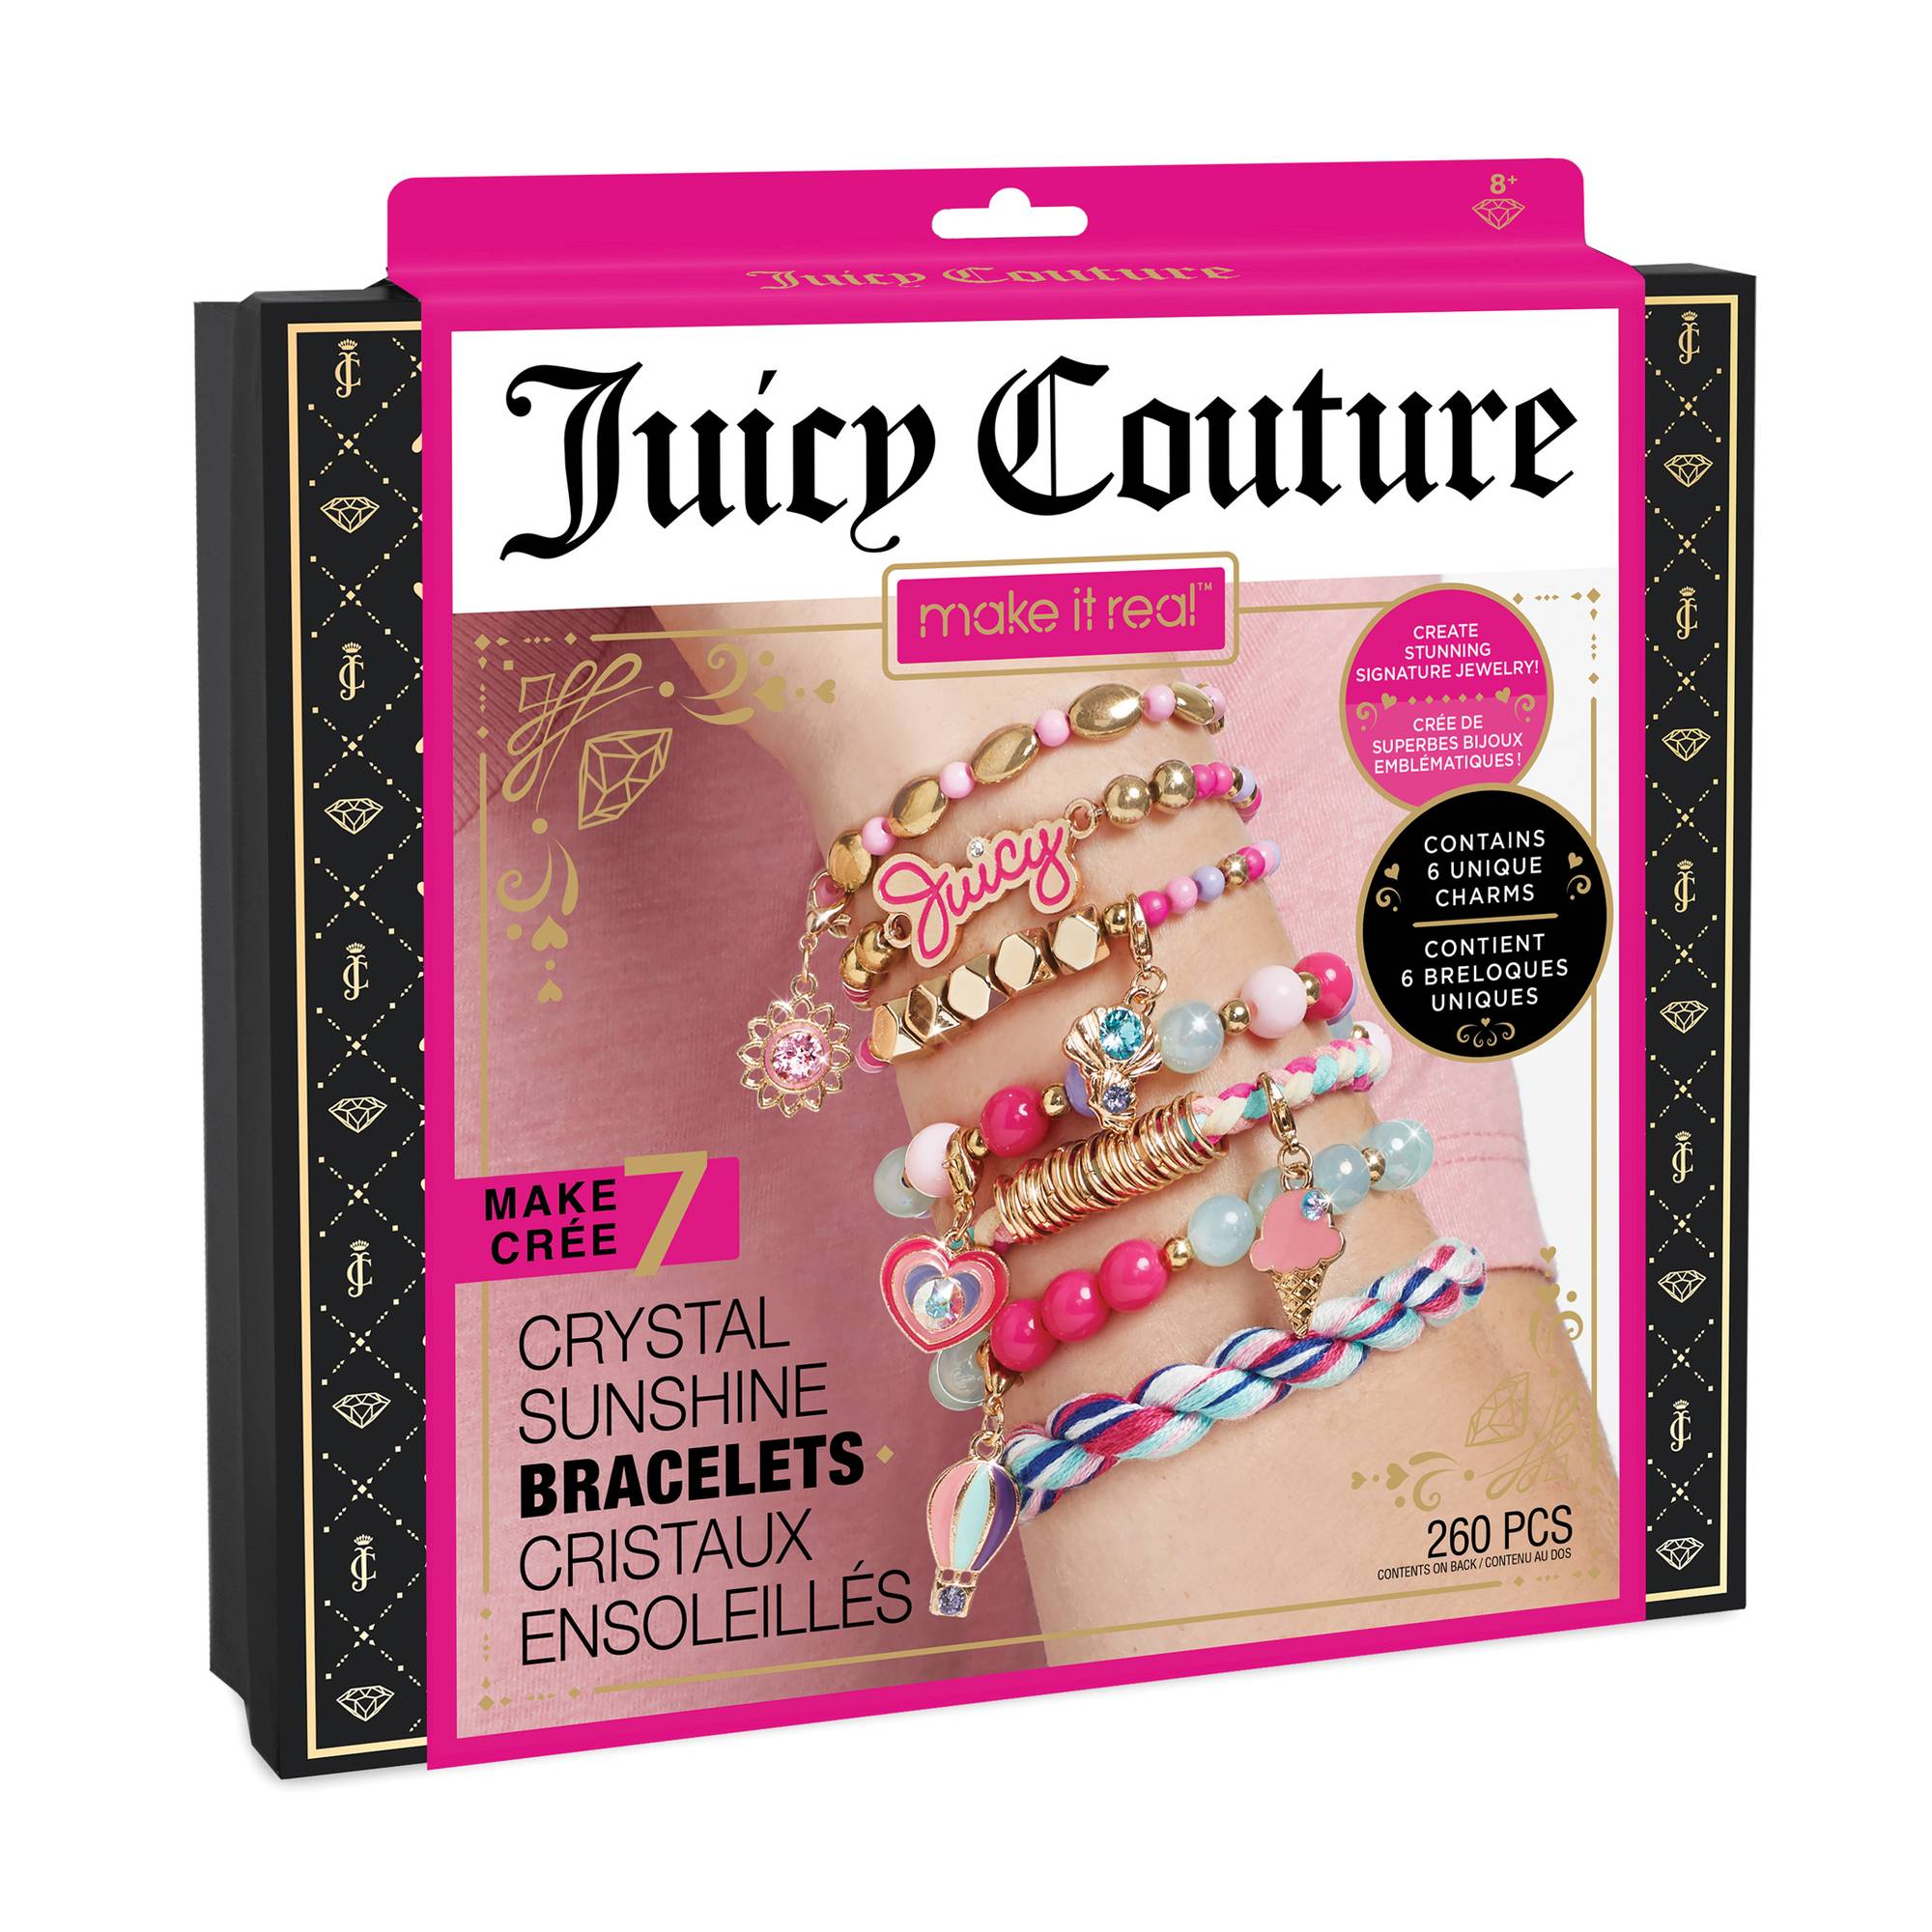 Juicy Couture Viva la Juicy 50ml Eau de Parfum, 3-piece Fragrance Gift Set,  for Women : Amazon.co.uk: Beauty